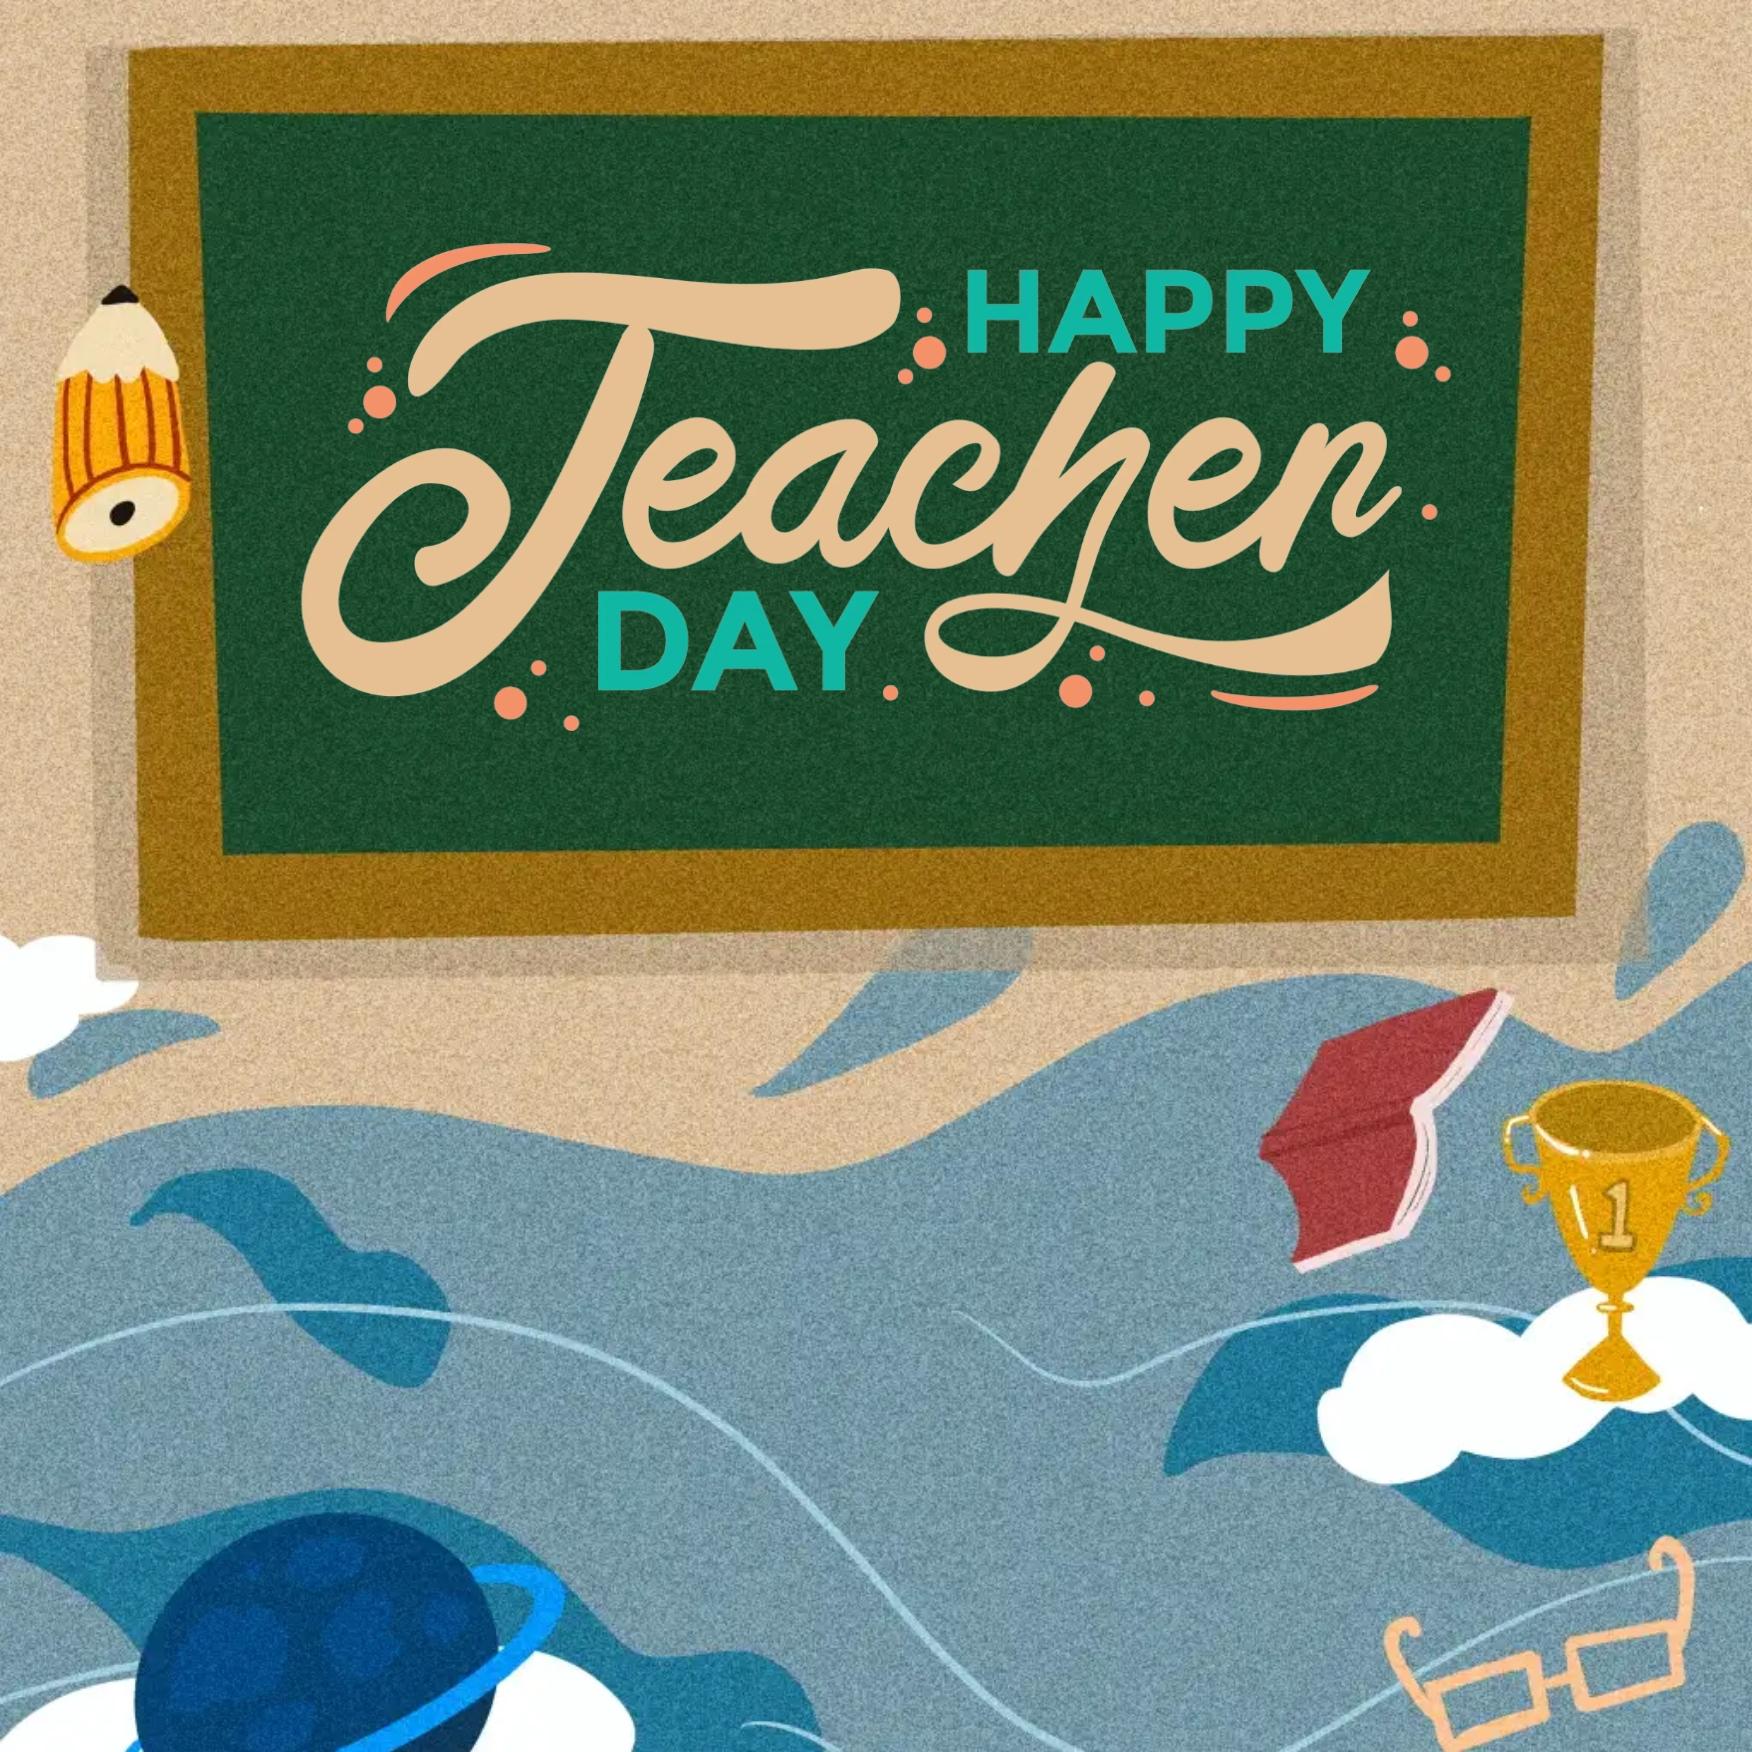 Happy Teachers Day Image 2022